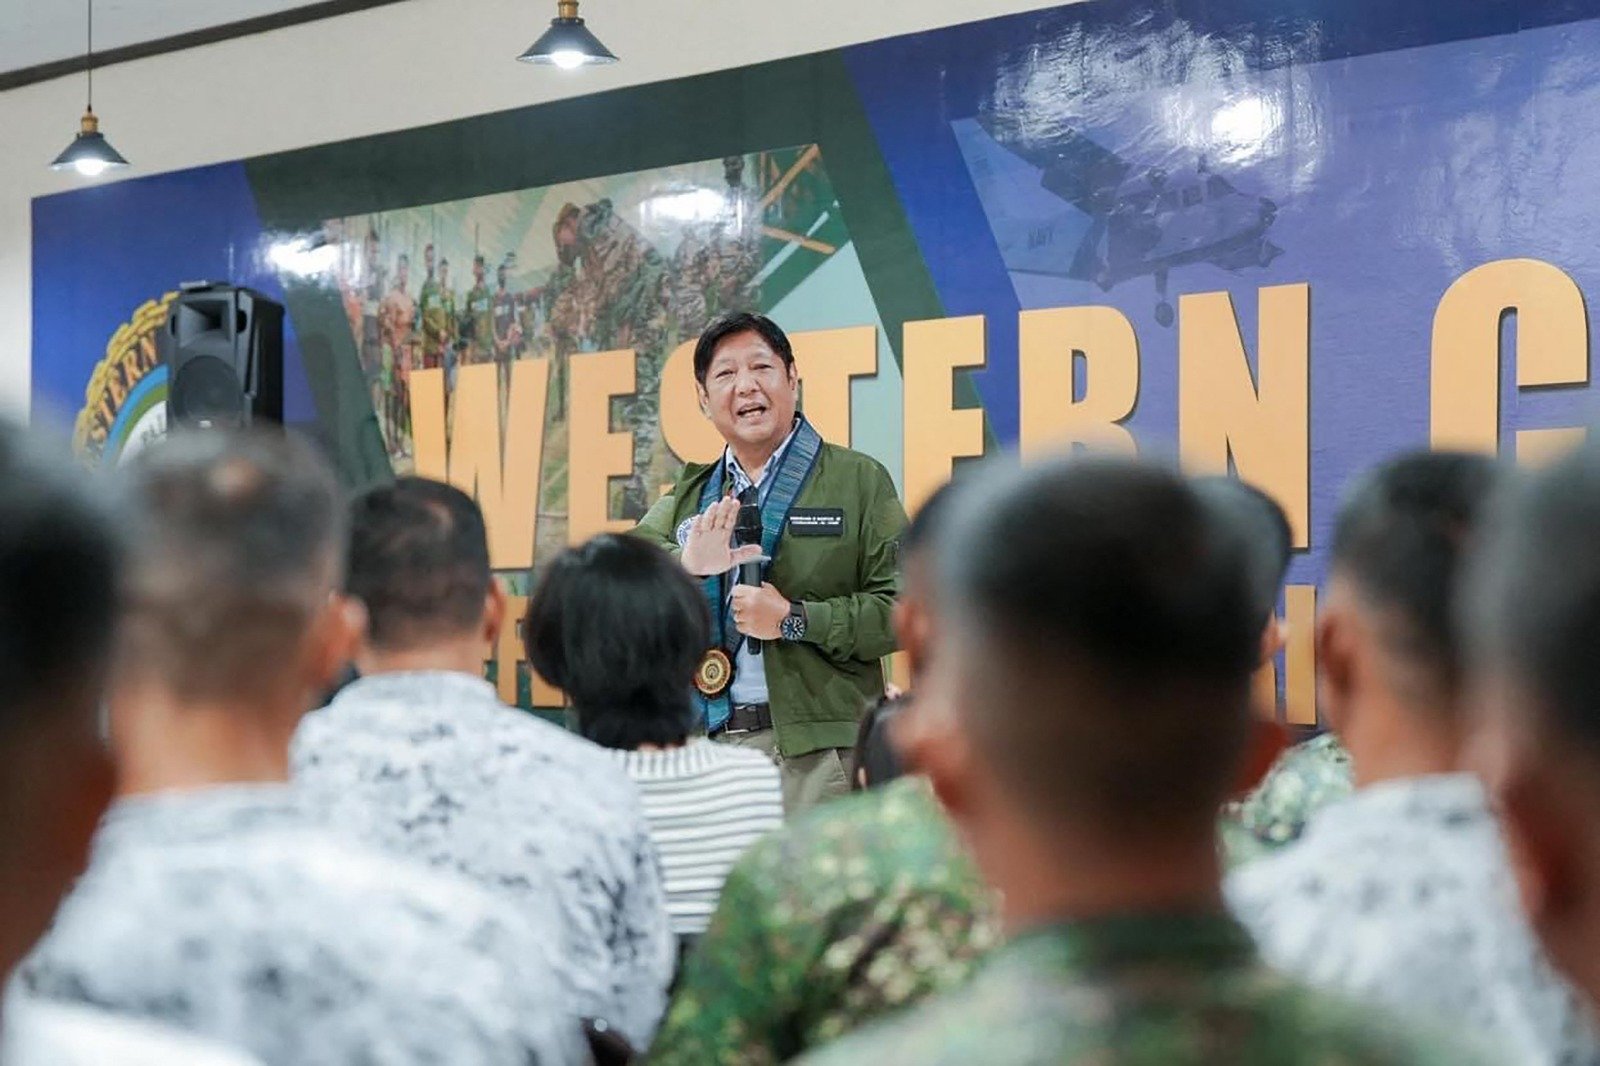 6月23日拍摄与发布的照片，显示菲律宾总统小马科斯在在巴拉望岛公主港的菲律宾南中国海部队总部向部队讲话。他表示，菲律宾海军与中国海警在南中国海发生暴力冲突后，菲律宾“不会被任何人吓倒”。（图取自总统通讯办公室/法新社）